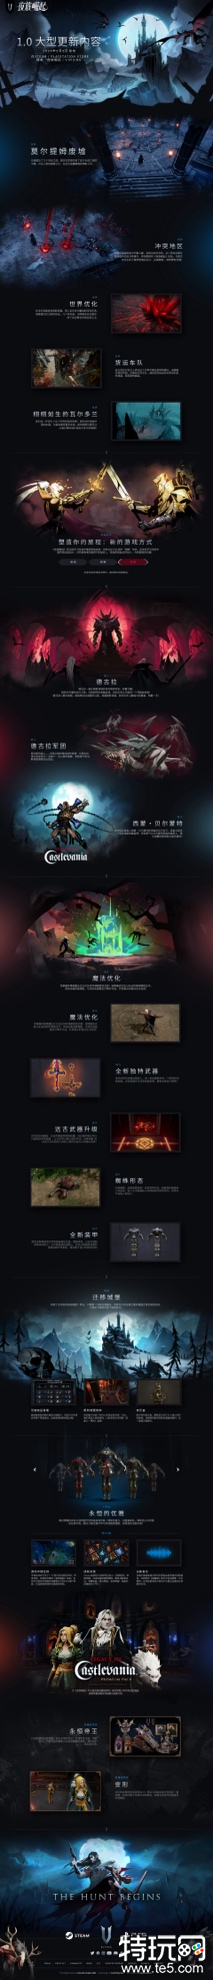 吸血鬼主题生存游戏《夜族崛起》发布全新区域首个实机预告片：“莫尔提姆废墟”